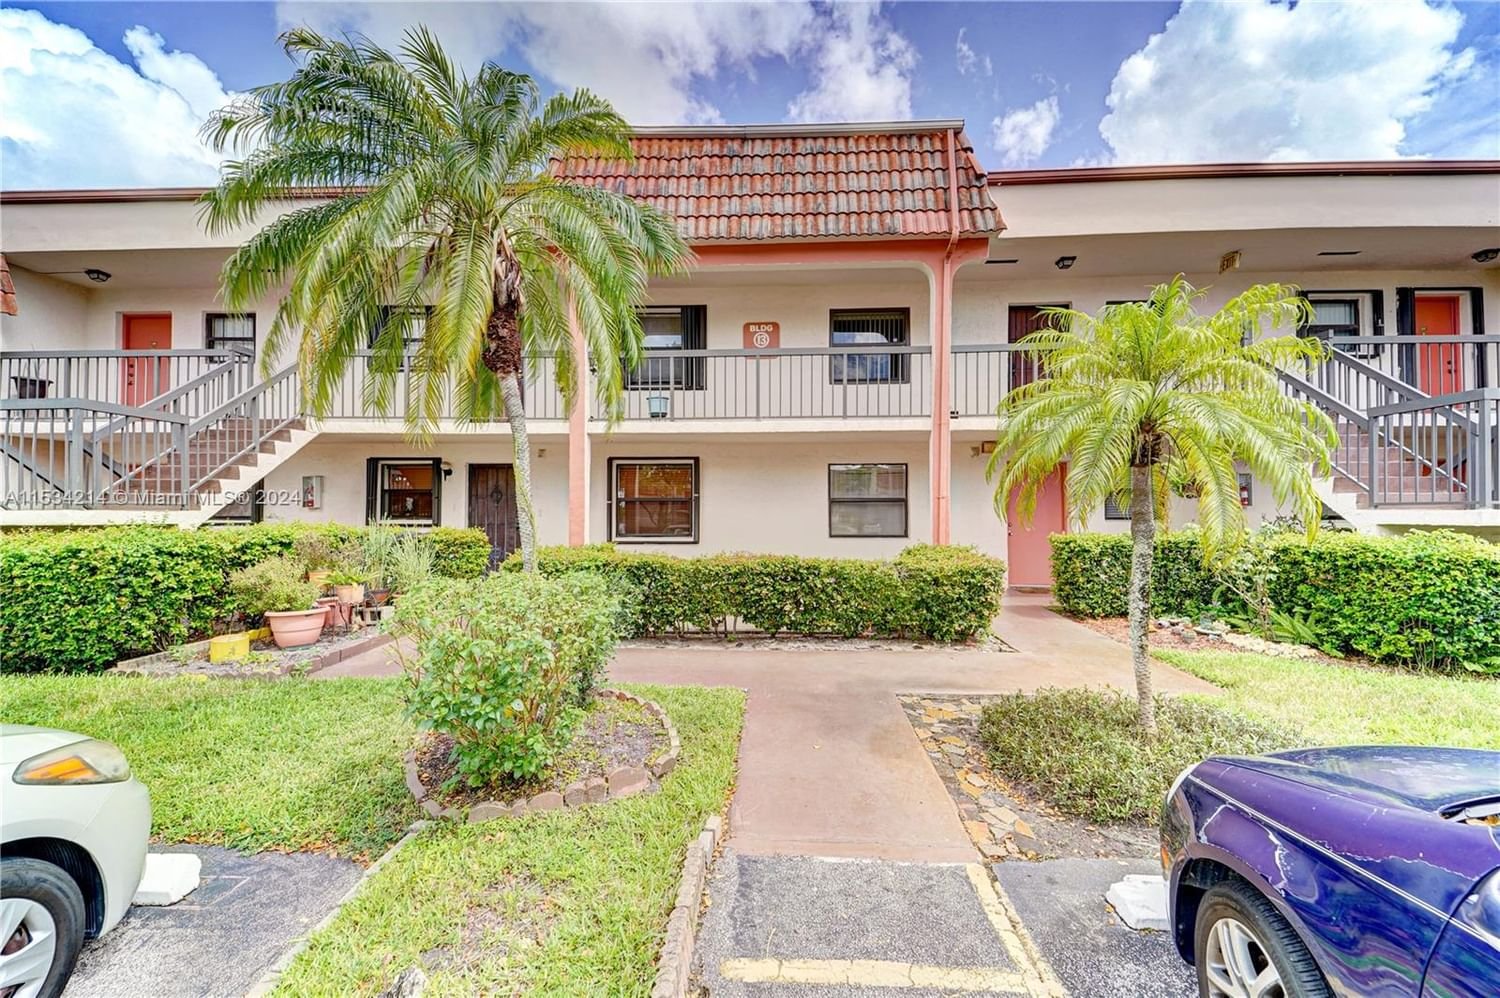 Real estate property located at 851 207th ln #203-13, Miami-Dade County, MONTEREY TWO CONDO, Miami, FL